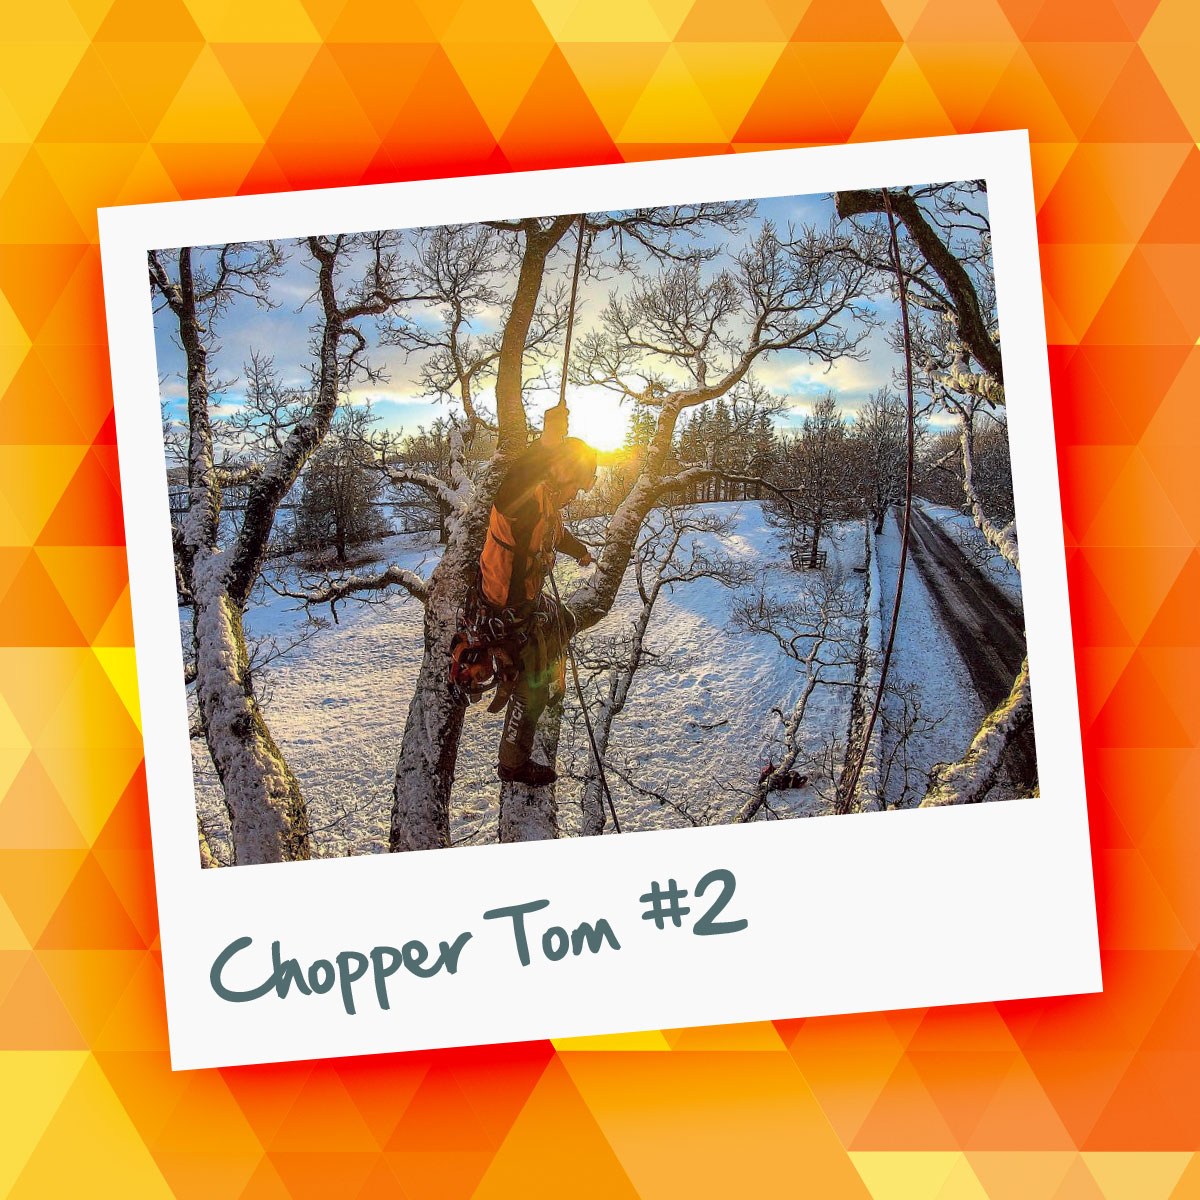 Chopper Tom #2